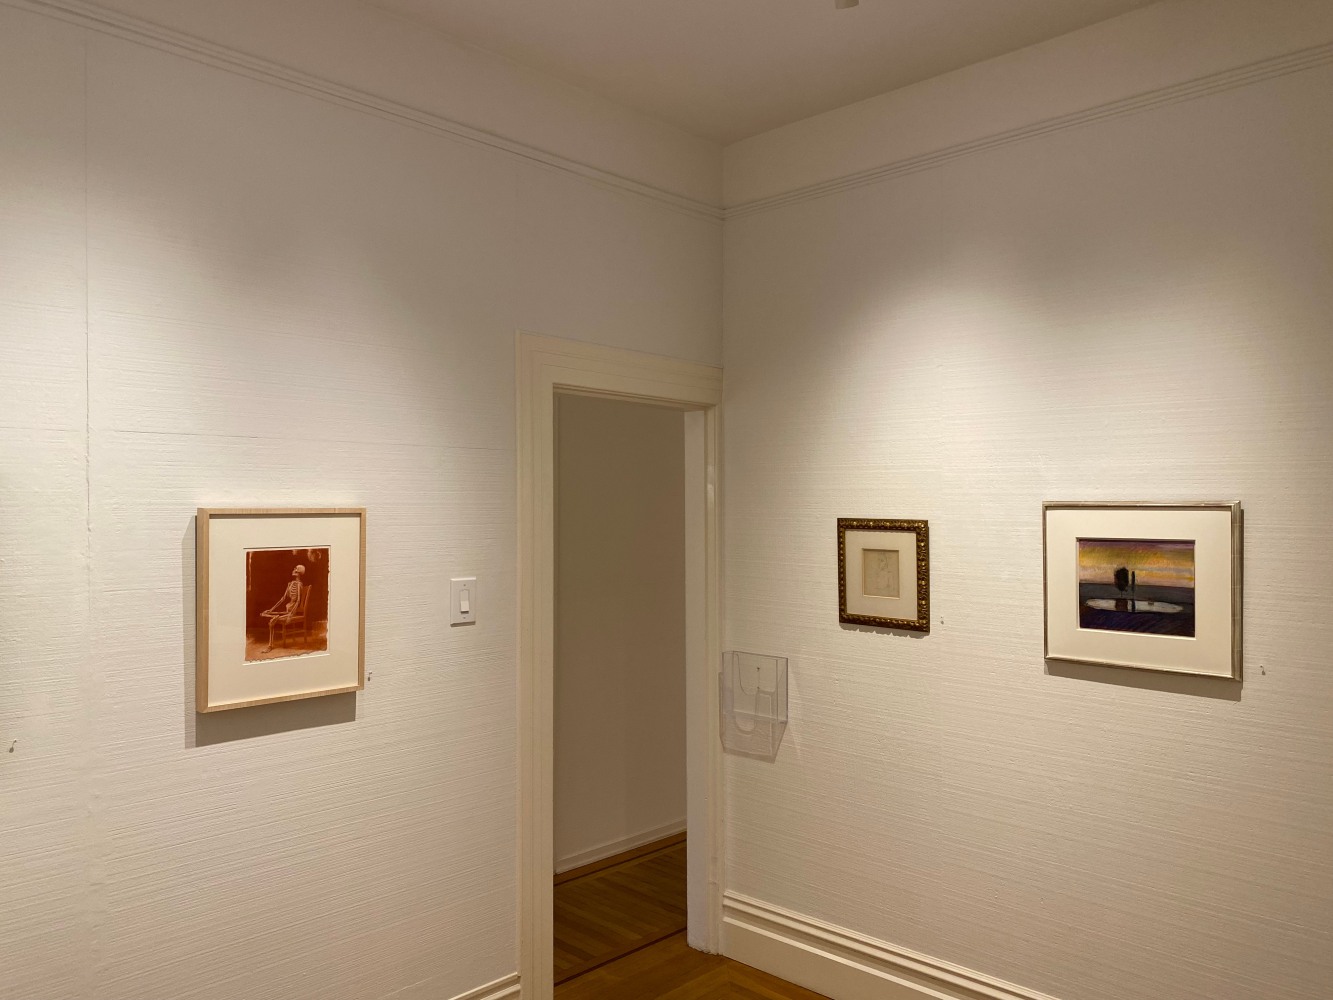 Wayne Thiebaud: A Painter's View